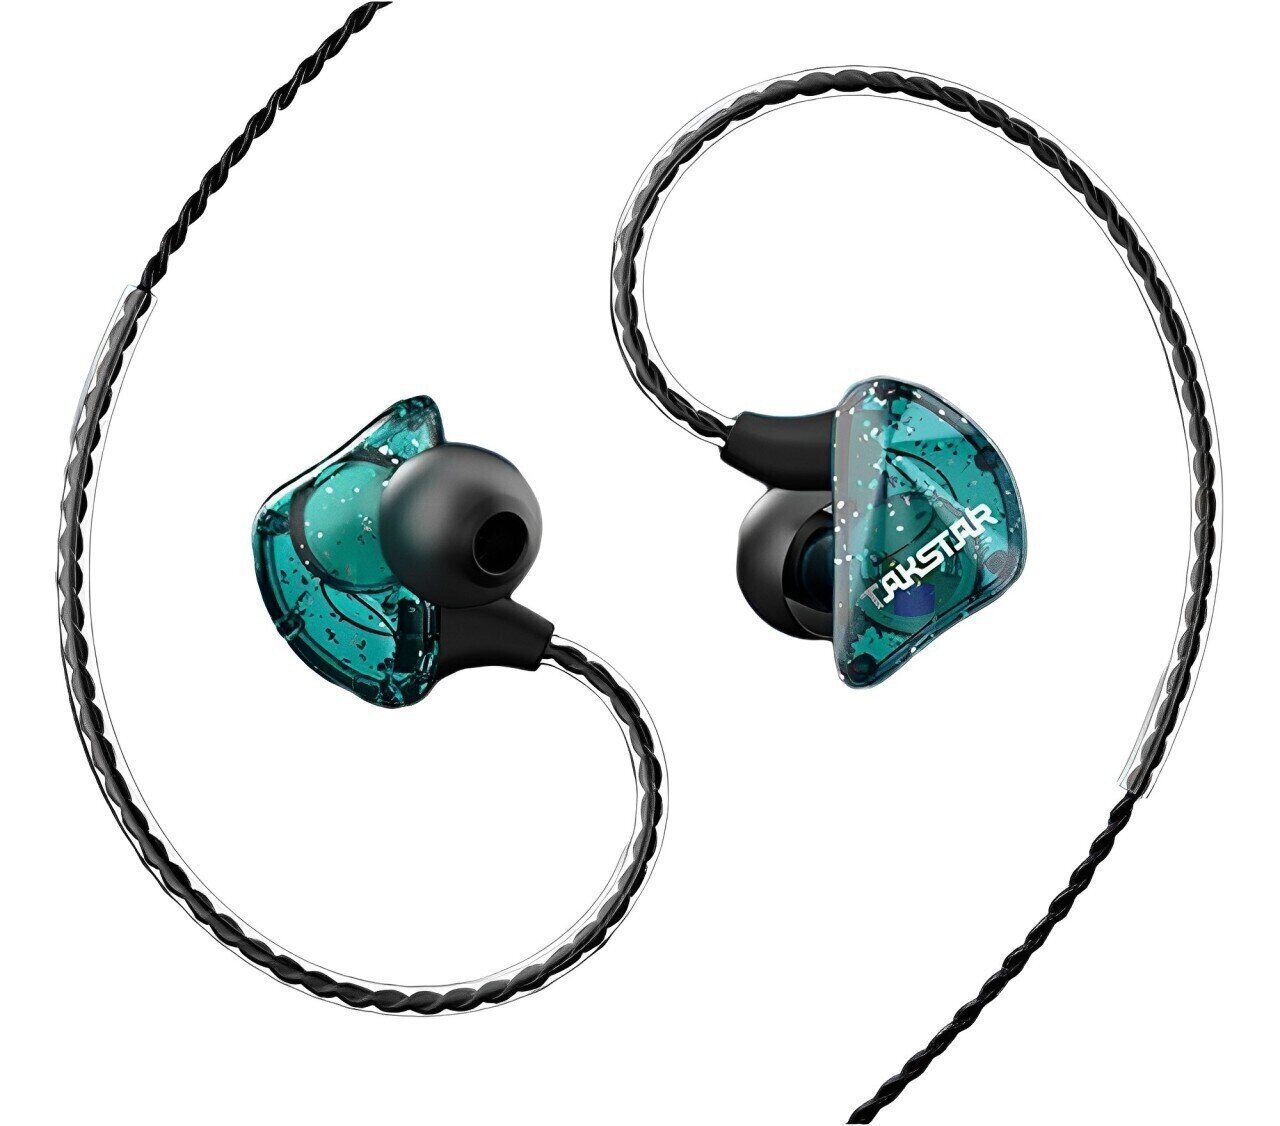 Ohrbügel-Kopfhörer Takstar TS-2300 Blue In-Ear Monitor Earphones